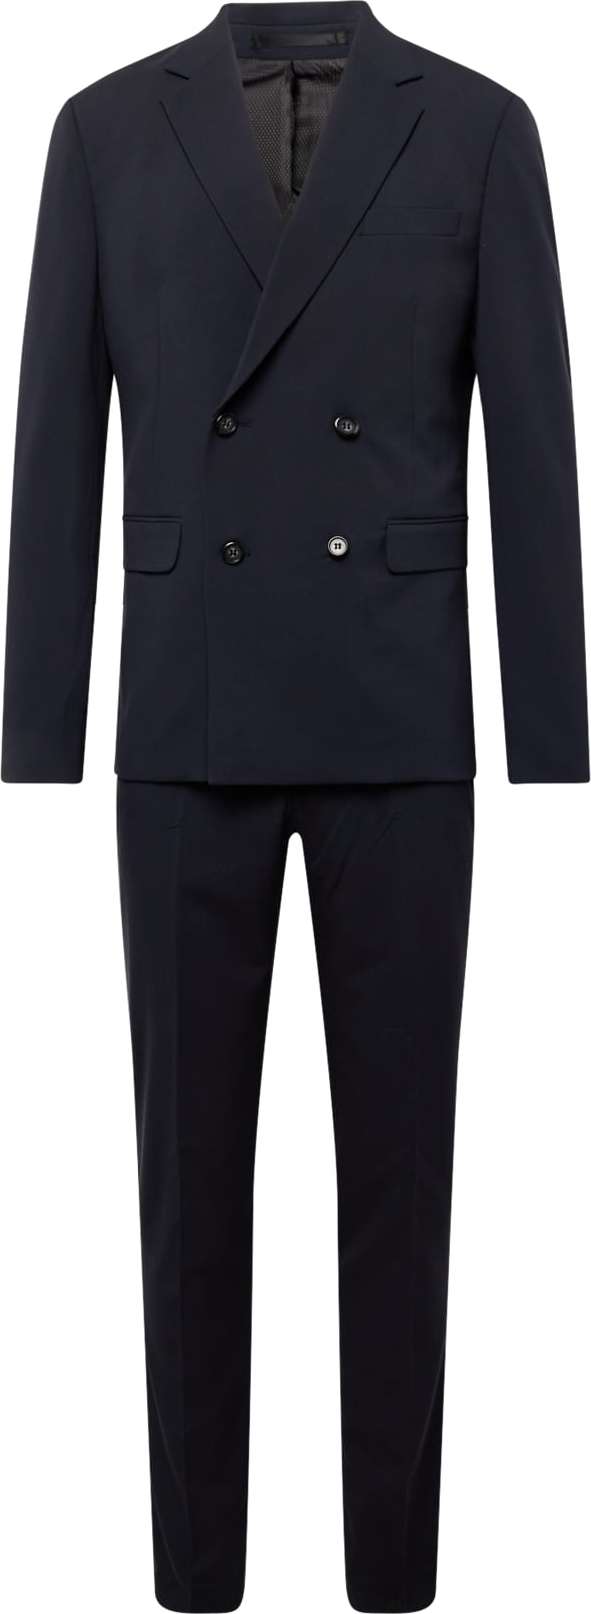 Oblek lindbergh námořnická modř